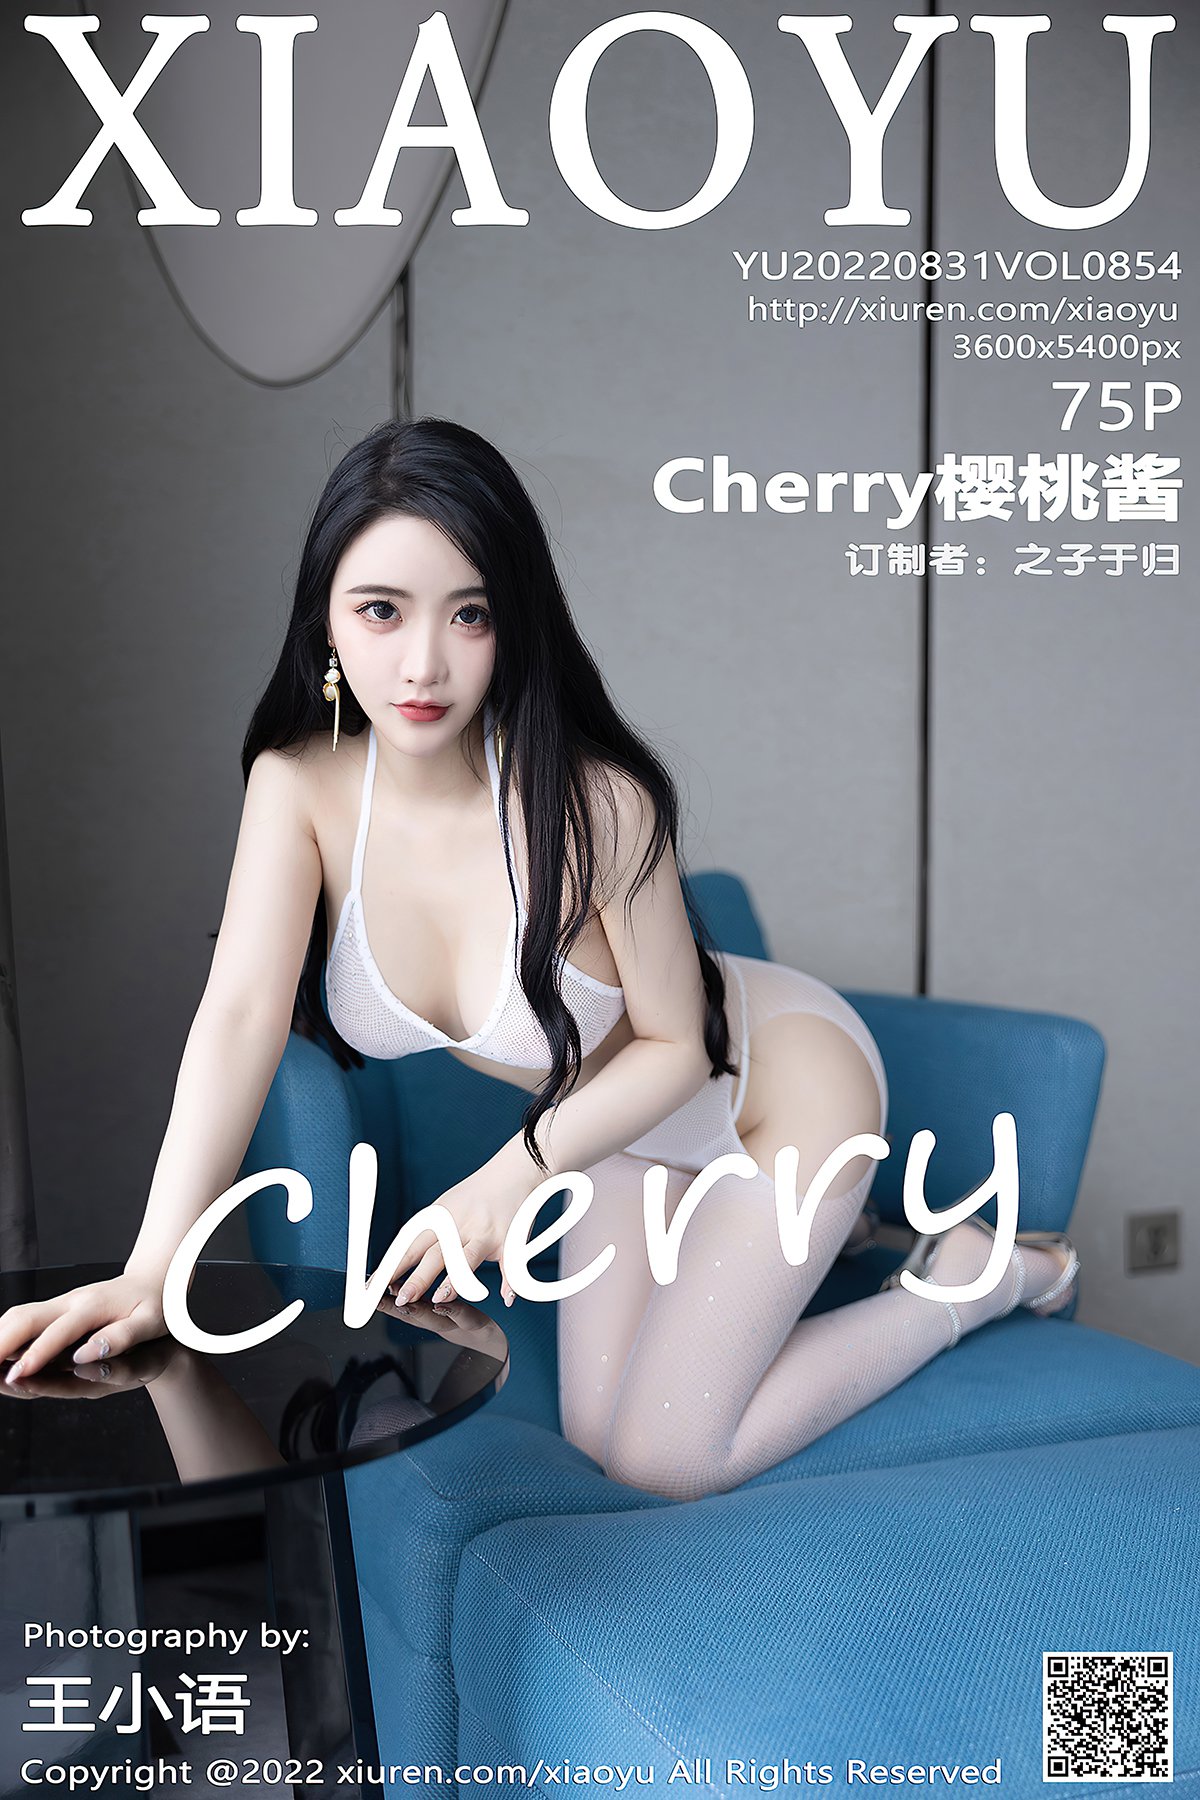 XiaoYu语画界 Vol.854 Cherry Ying Tao Jiang